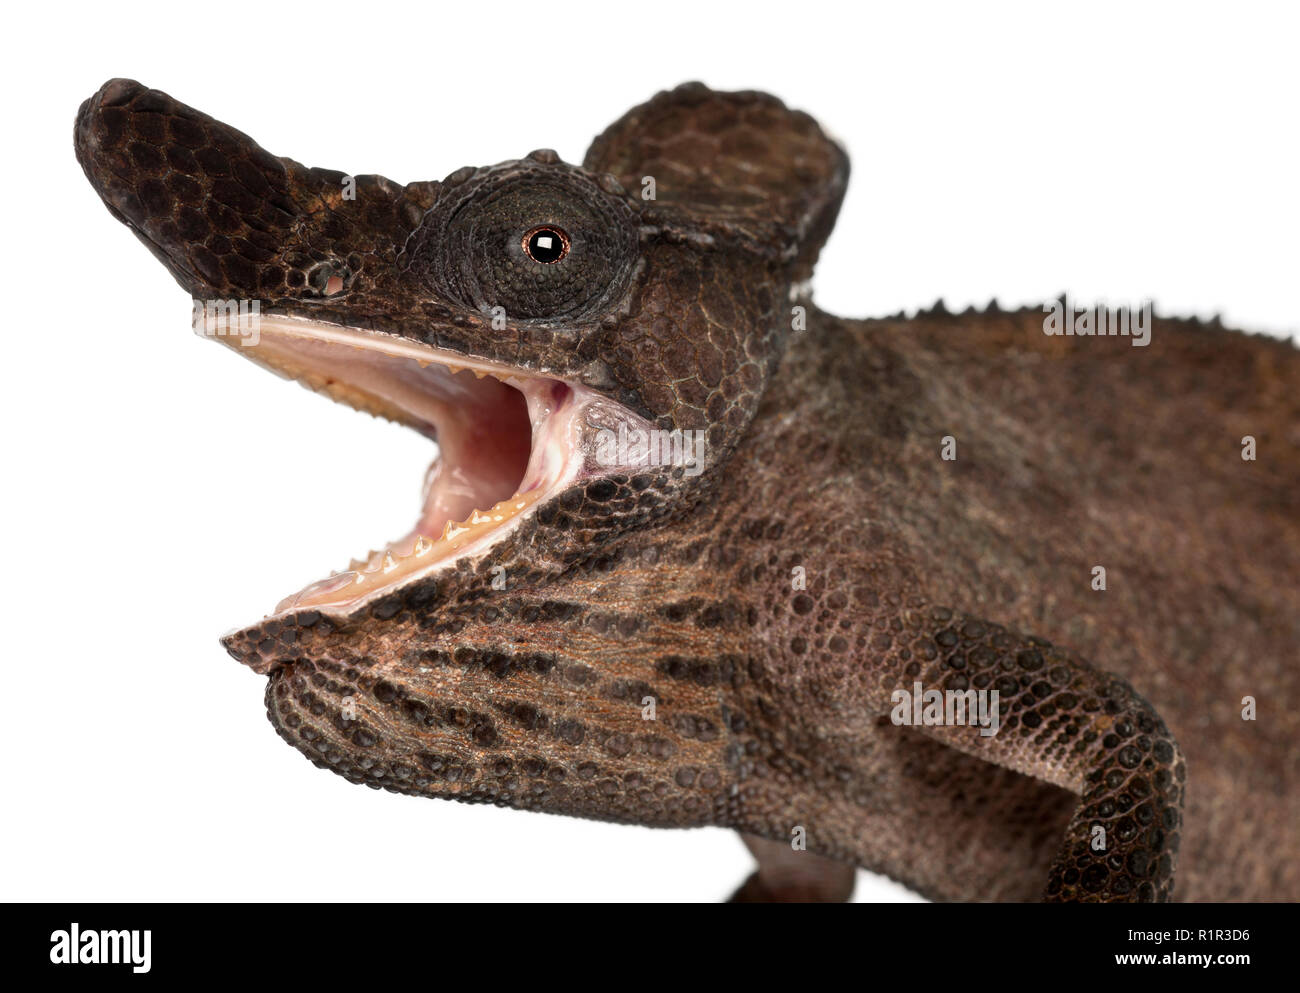 Close-up of Strange-nosed Chameleon, Kinyongia xenorhina, in front of white background Stock Photo